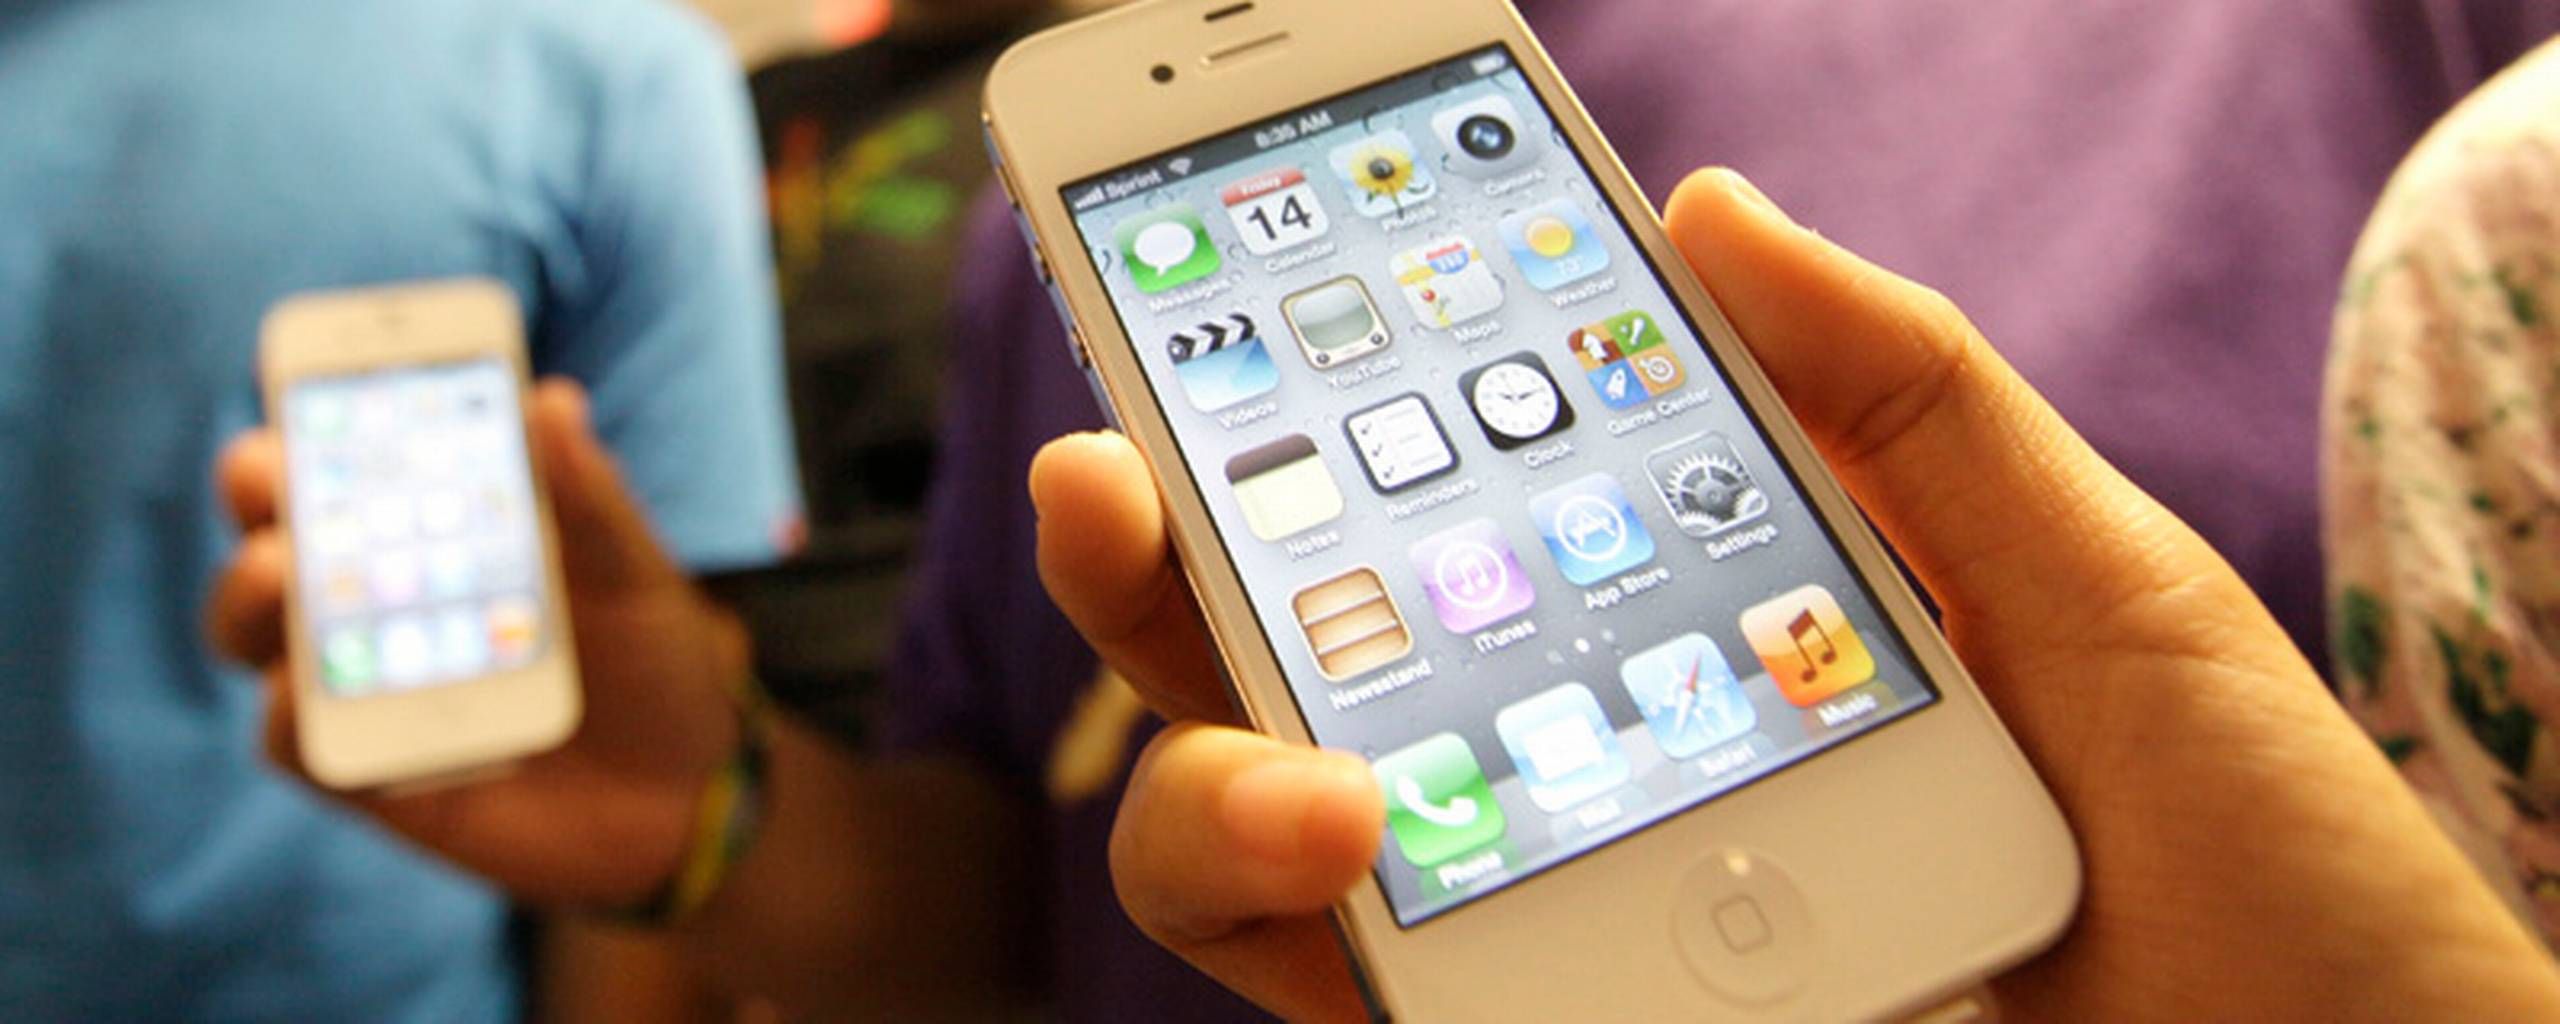 Claire Diplomatiske spørgsmål Bangladesh Test: iPhone 4S - en bedre iPhone